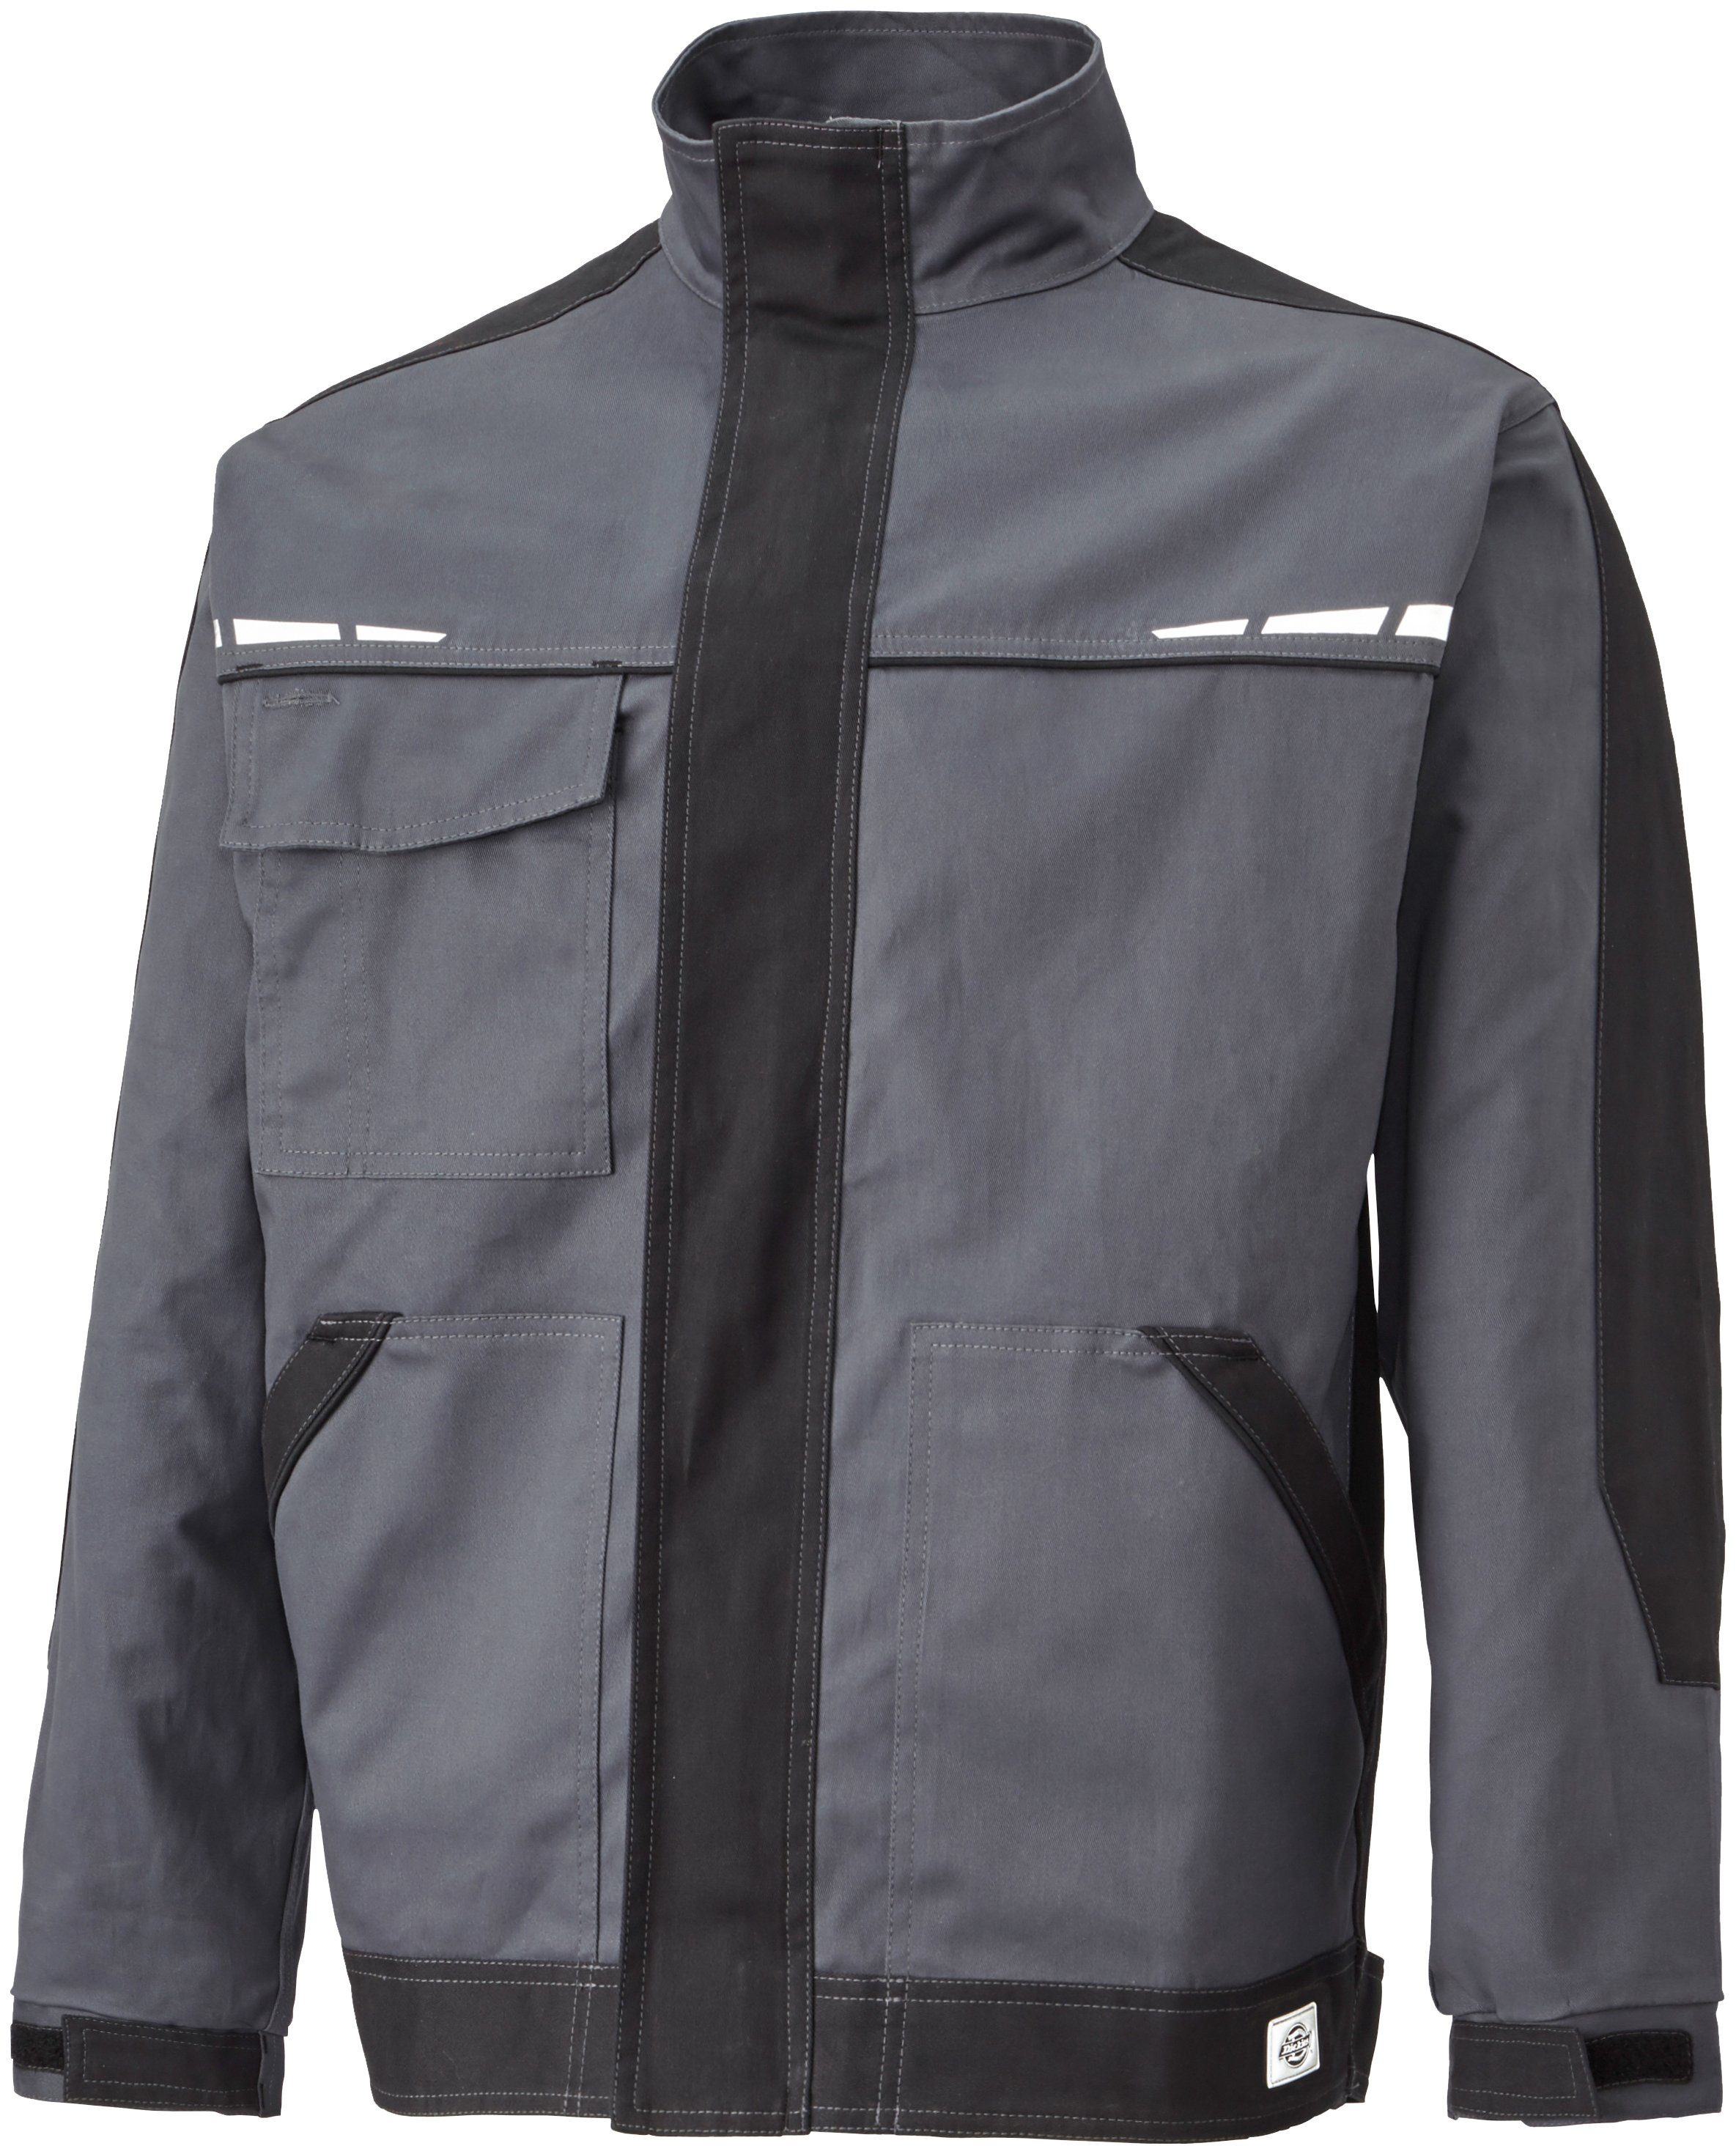 Arbeitsjacke GDT Premium Reflektierende Dickies Designelemente grau-schwarz